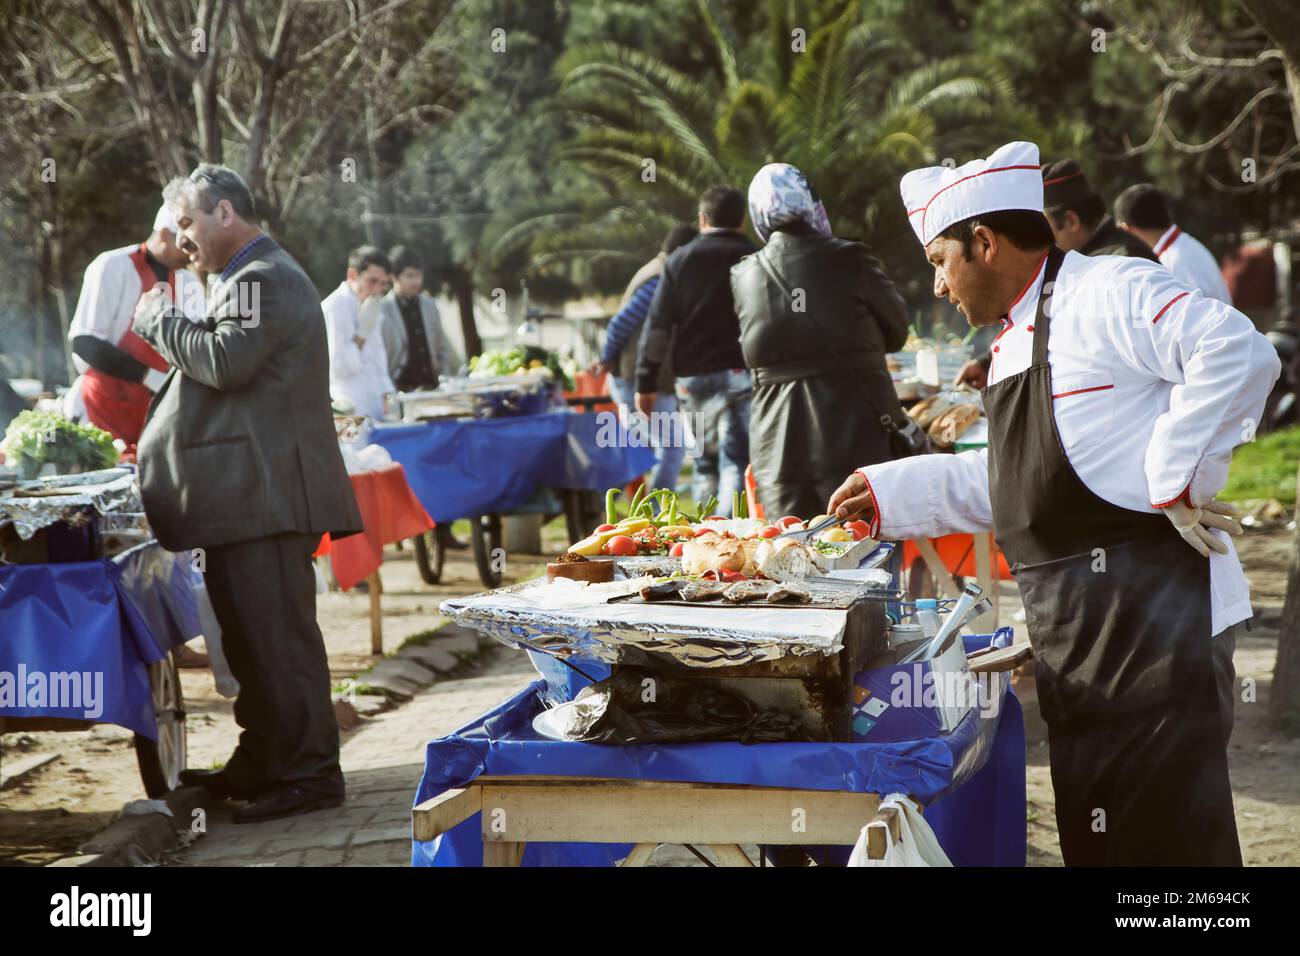 ESTAMBUL, TURQUÍA, 19 DE MARZO de 2013: Vendedores que venden pescado a la parrilla en un parque alrededor de Karakoy, Estambul, Turquía. Foto de stock